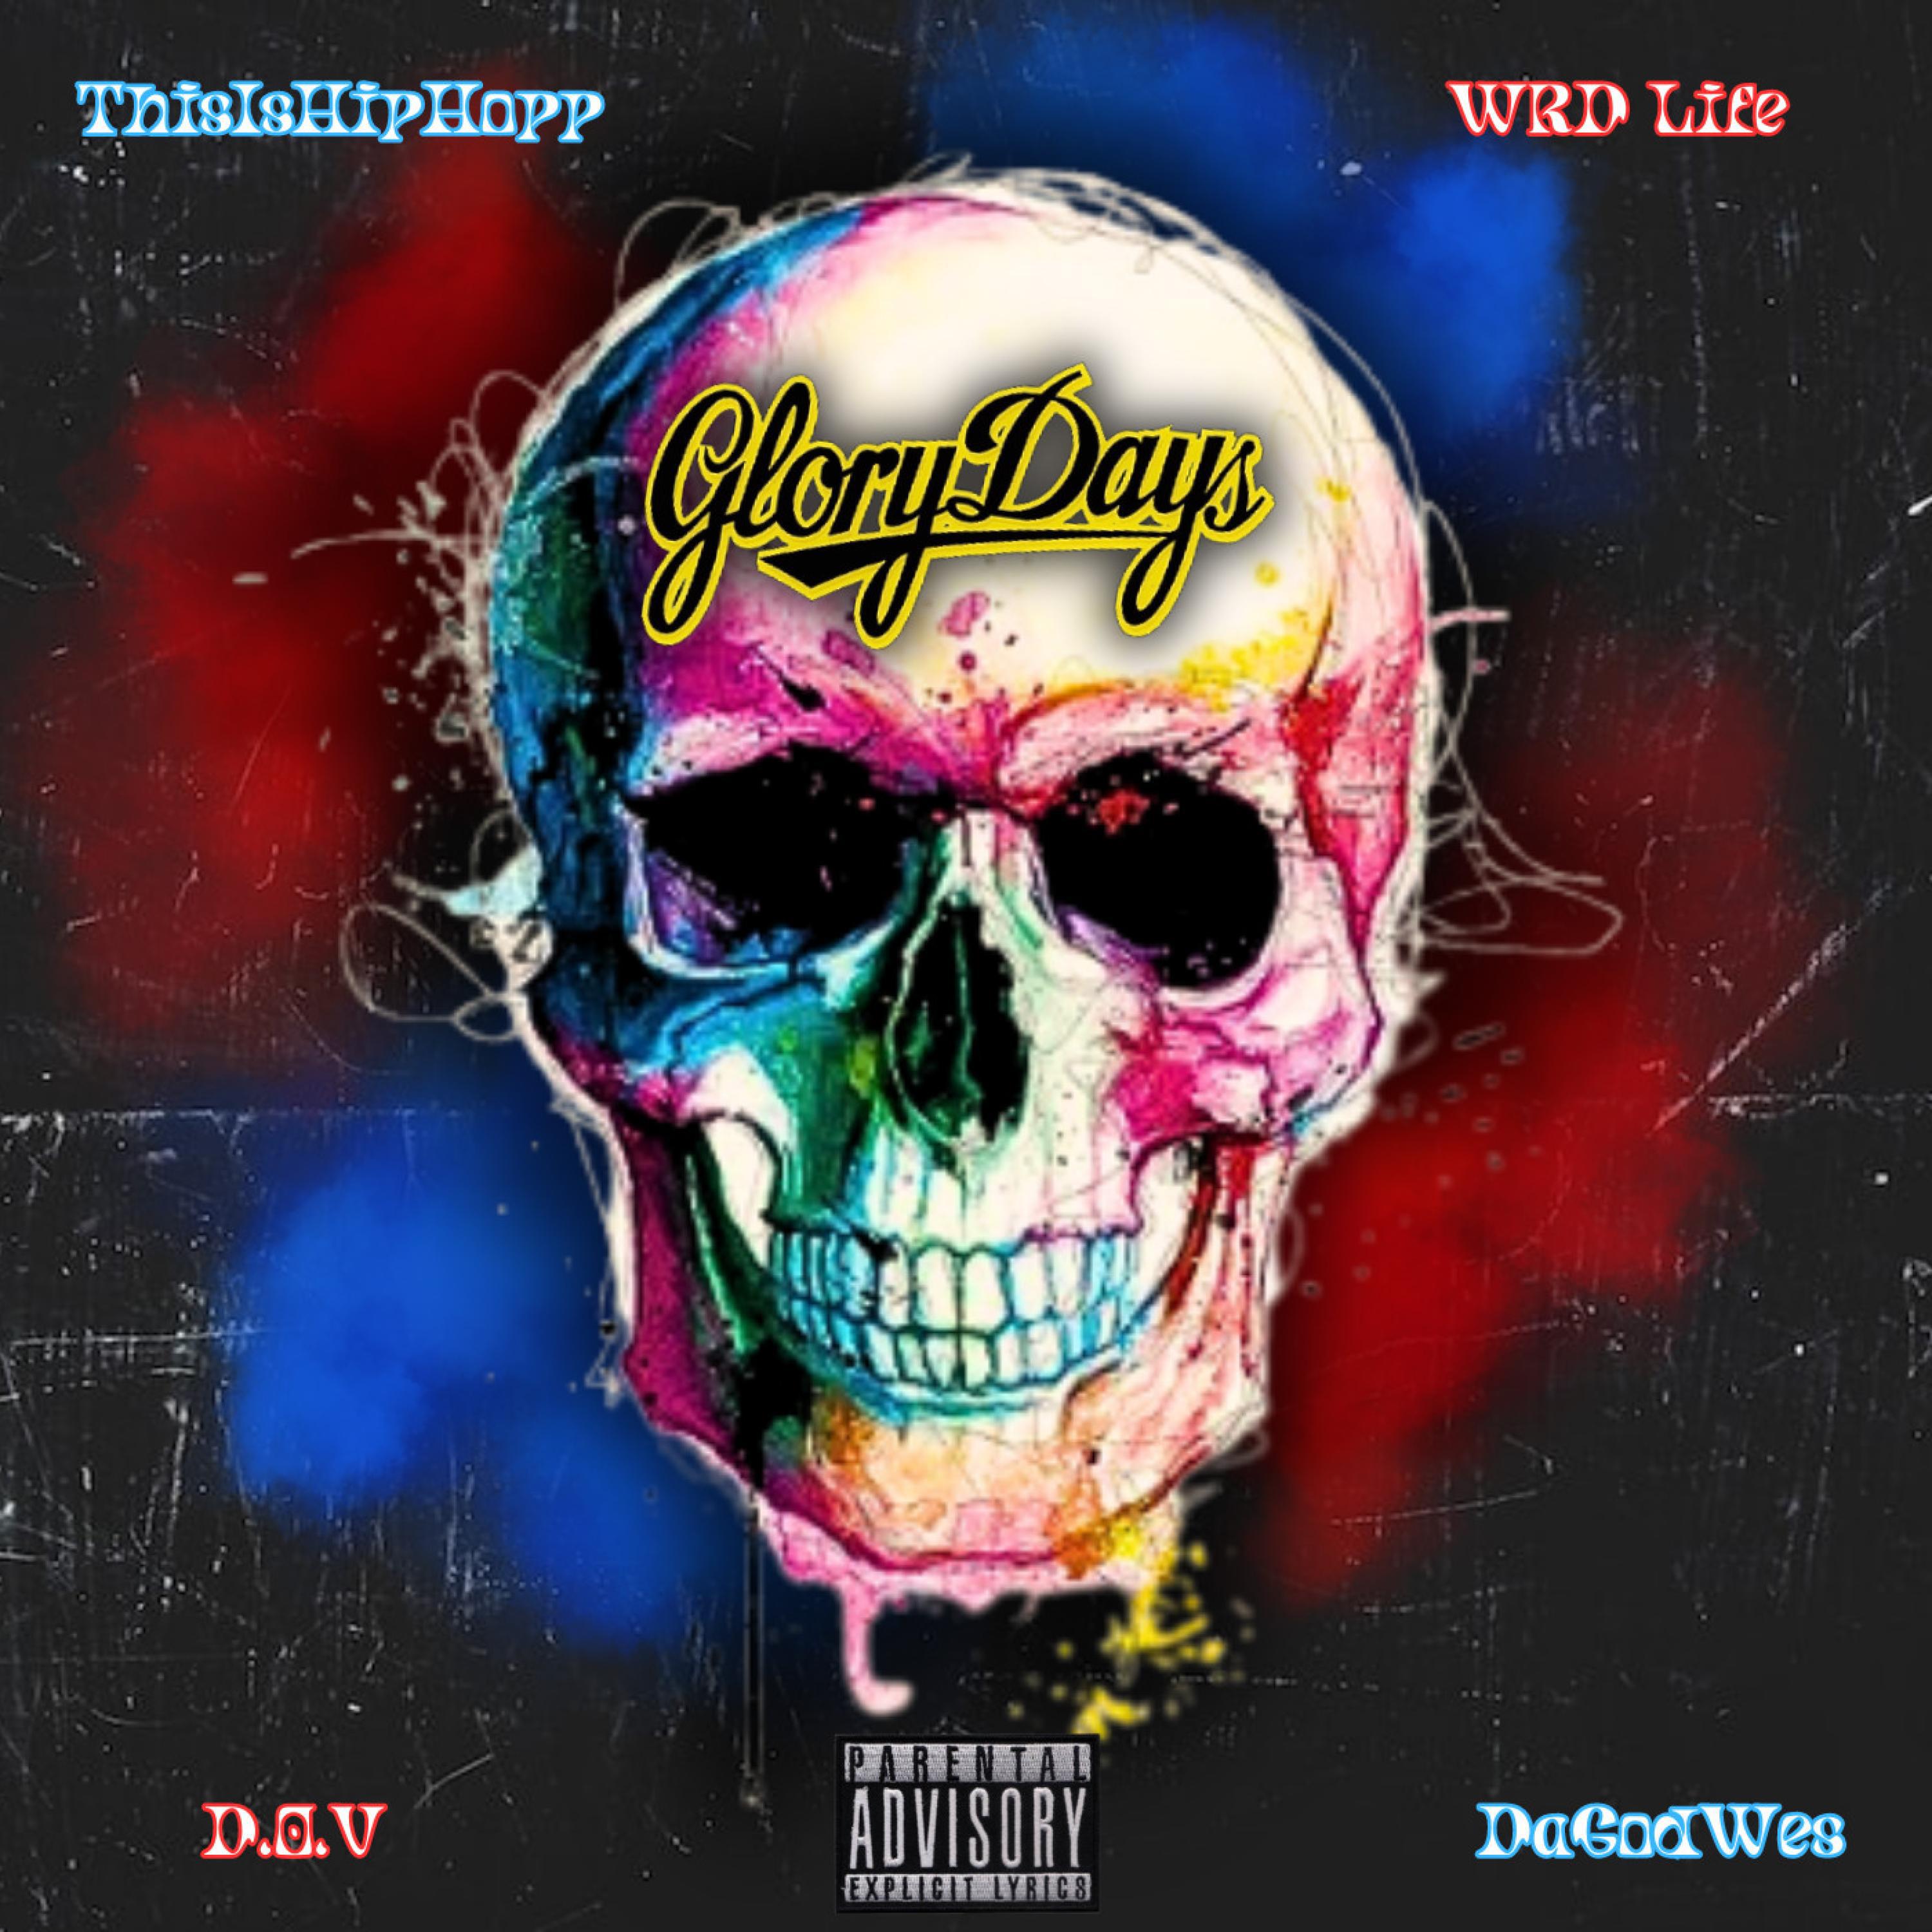 ThisIsHipHopp - Glory Days (feat. WRD Life, D.O.V & DaGodWes)